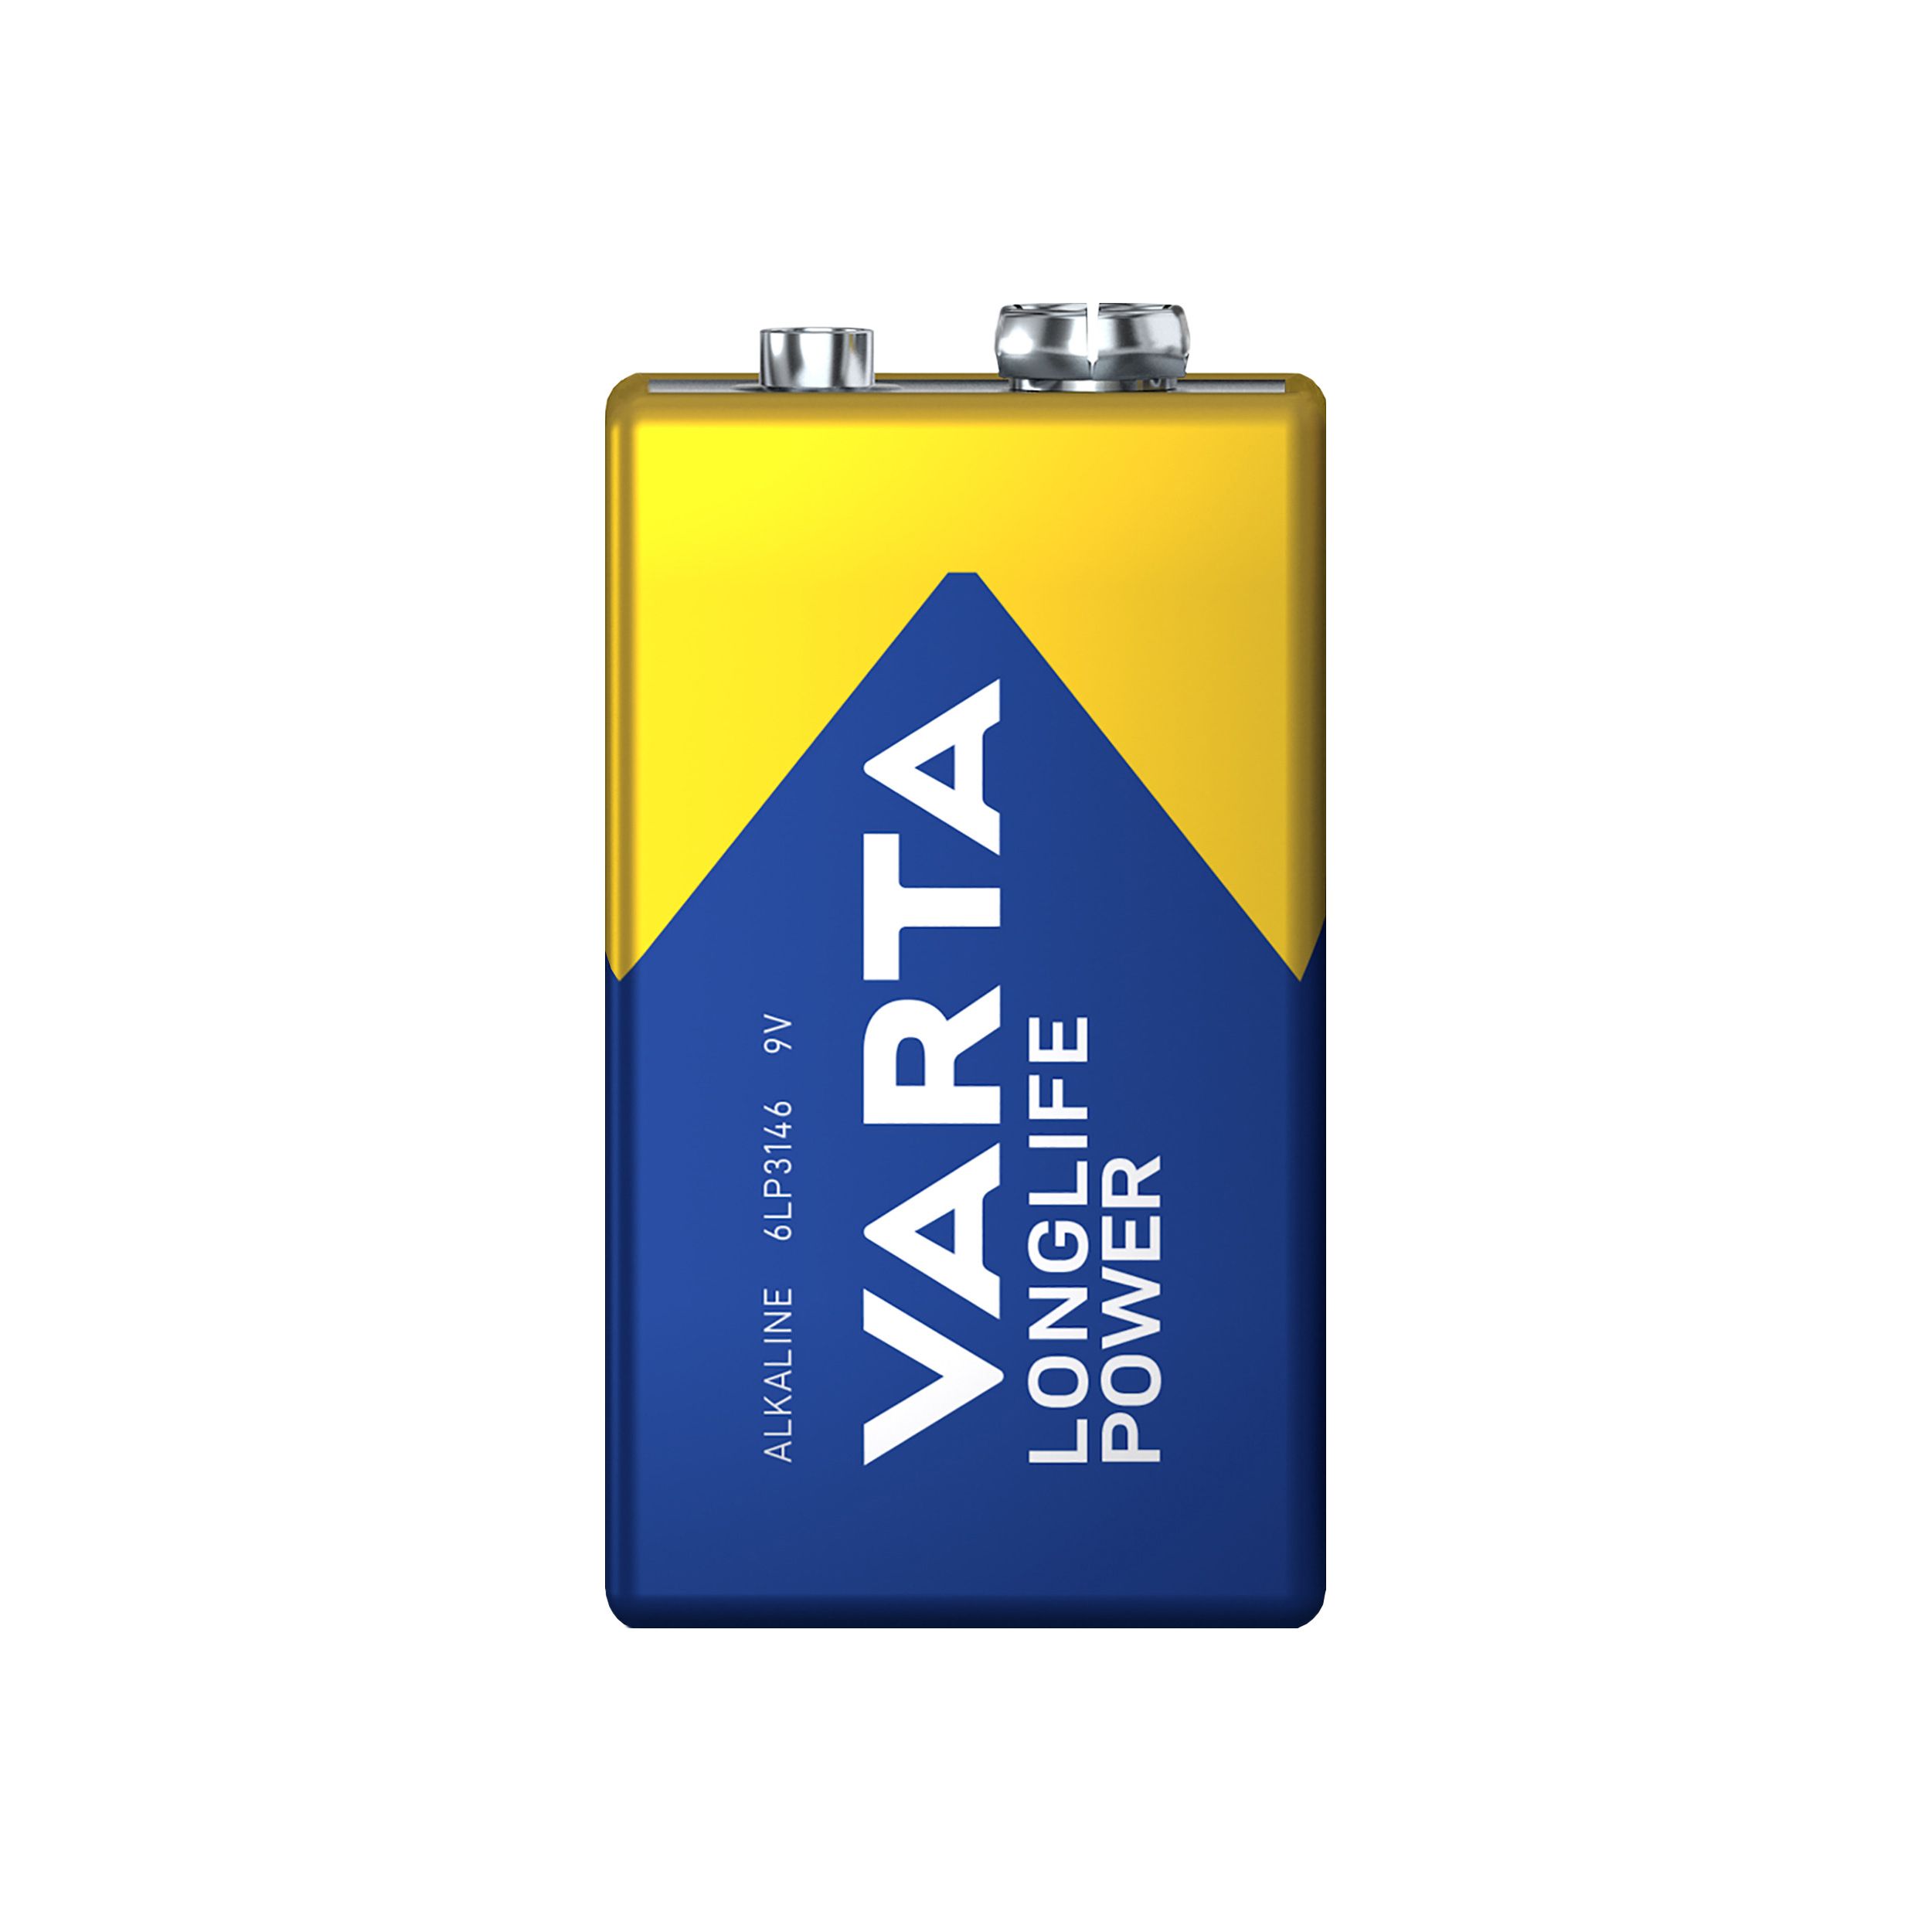 Varta Longlife Power 9V Battery, Pack of 4